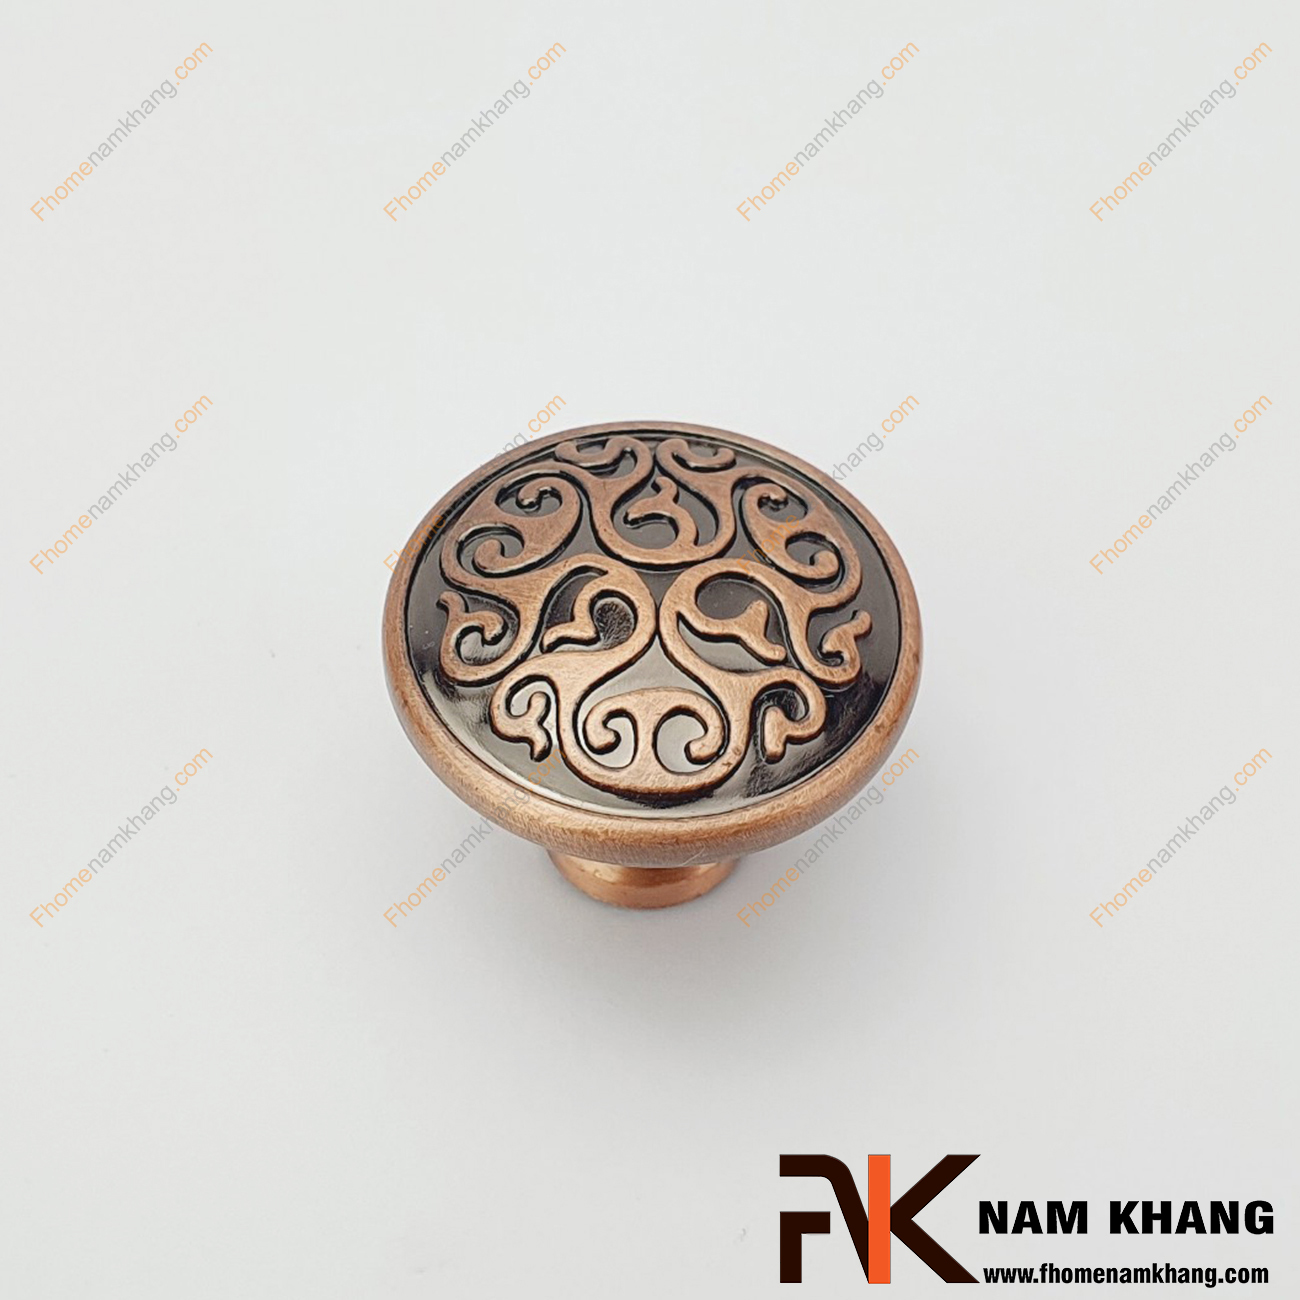 Núm cửa tủ màu đồng cổ NK048-HC, thiết kế đơn giản, họa tiết xoay tròn đối xứng phù hợp với nhiều phong cách tủ kệ.